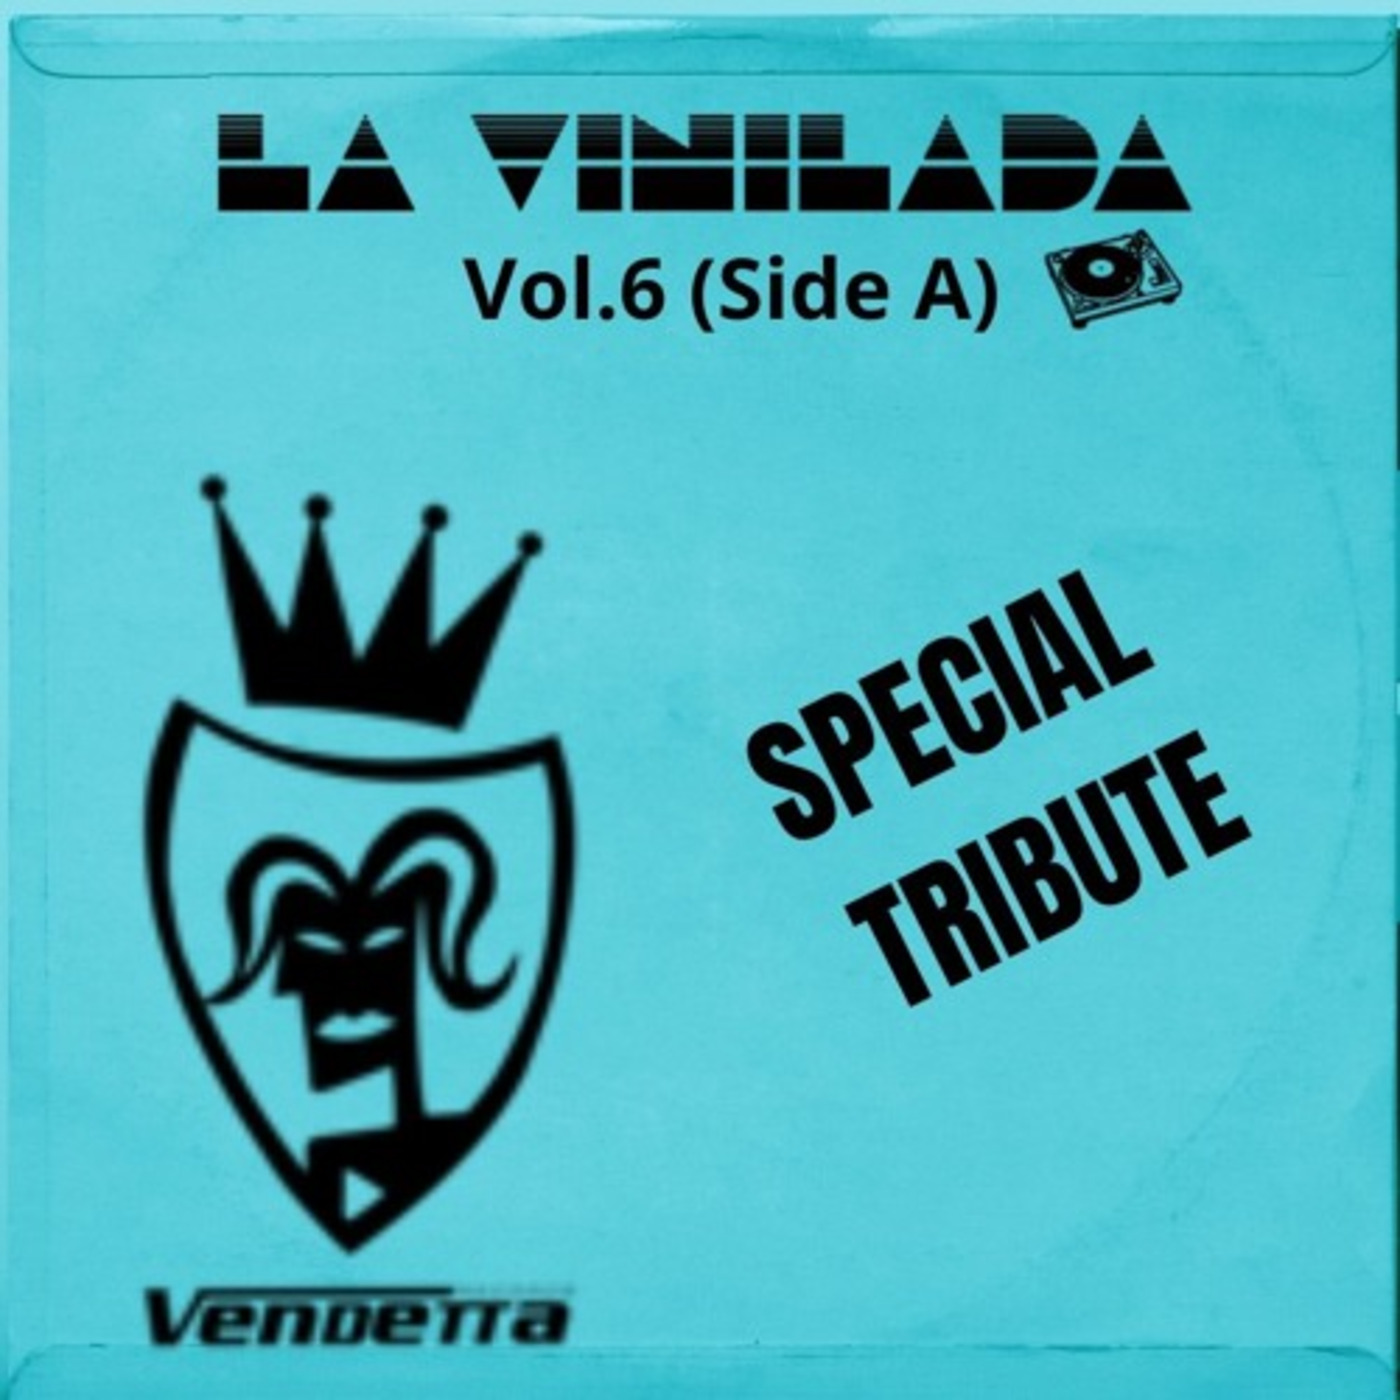 La Vinilada Vol6 (Side A) Tribute To Vendetta Records